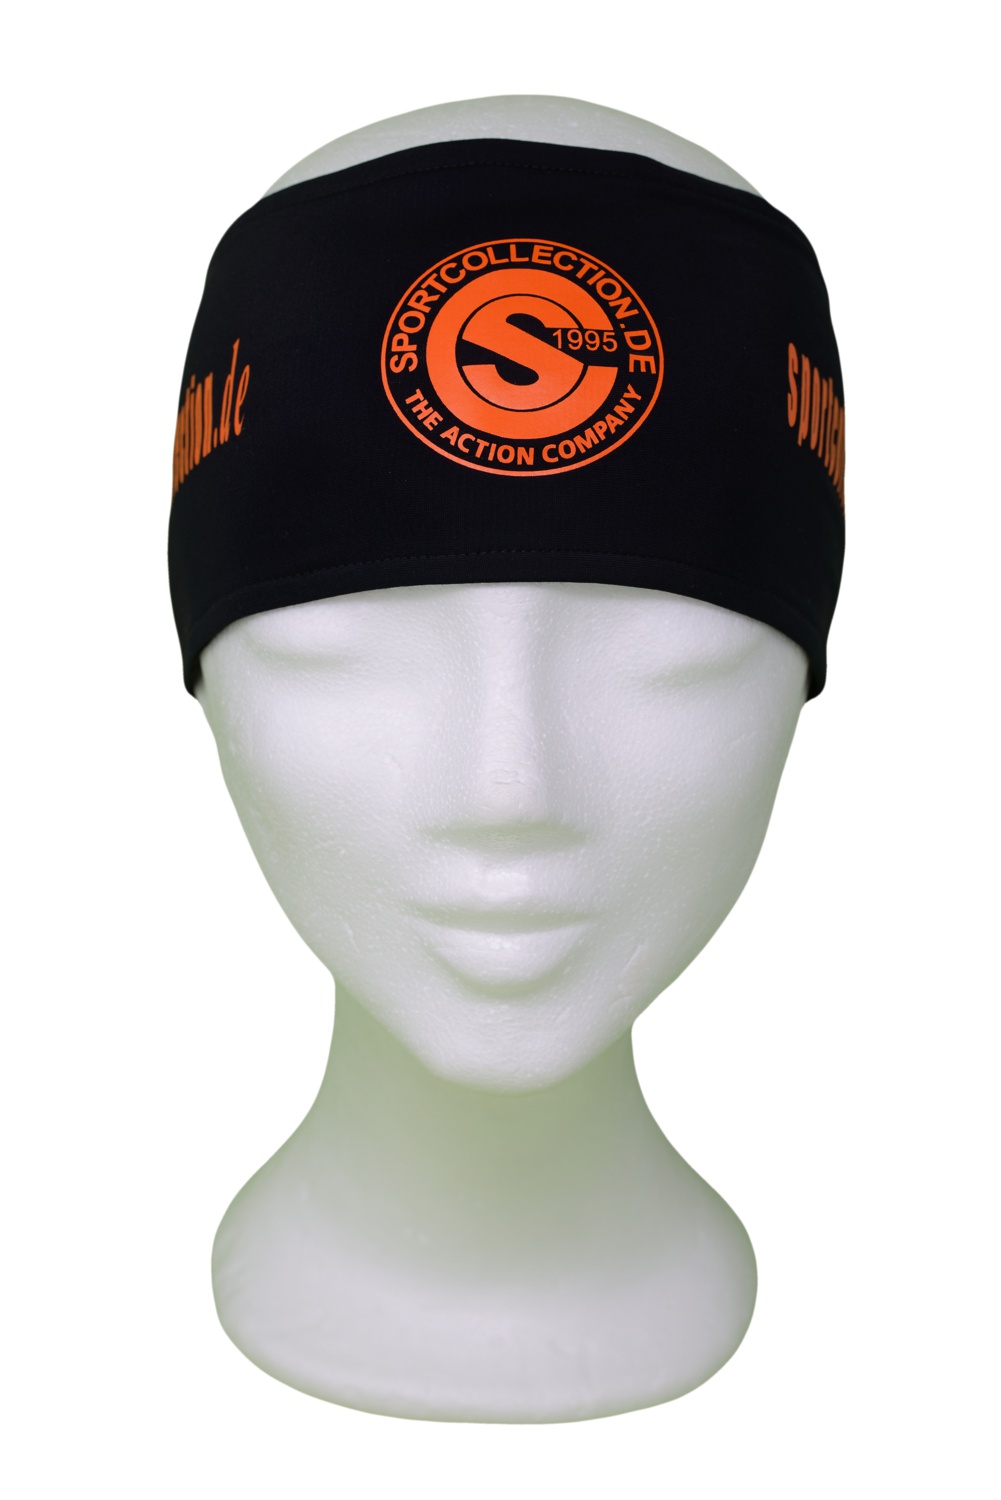 Stöhr Stirnband Schwarz-Orange-Logo-Text